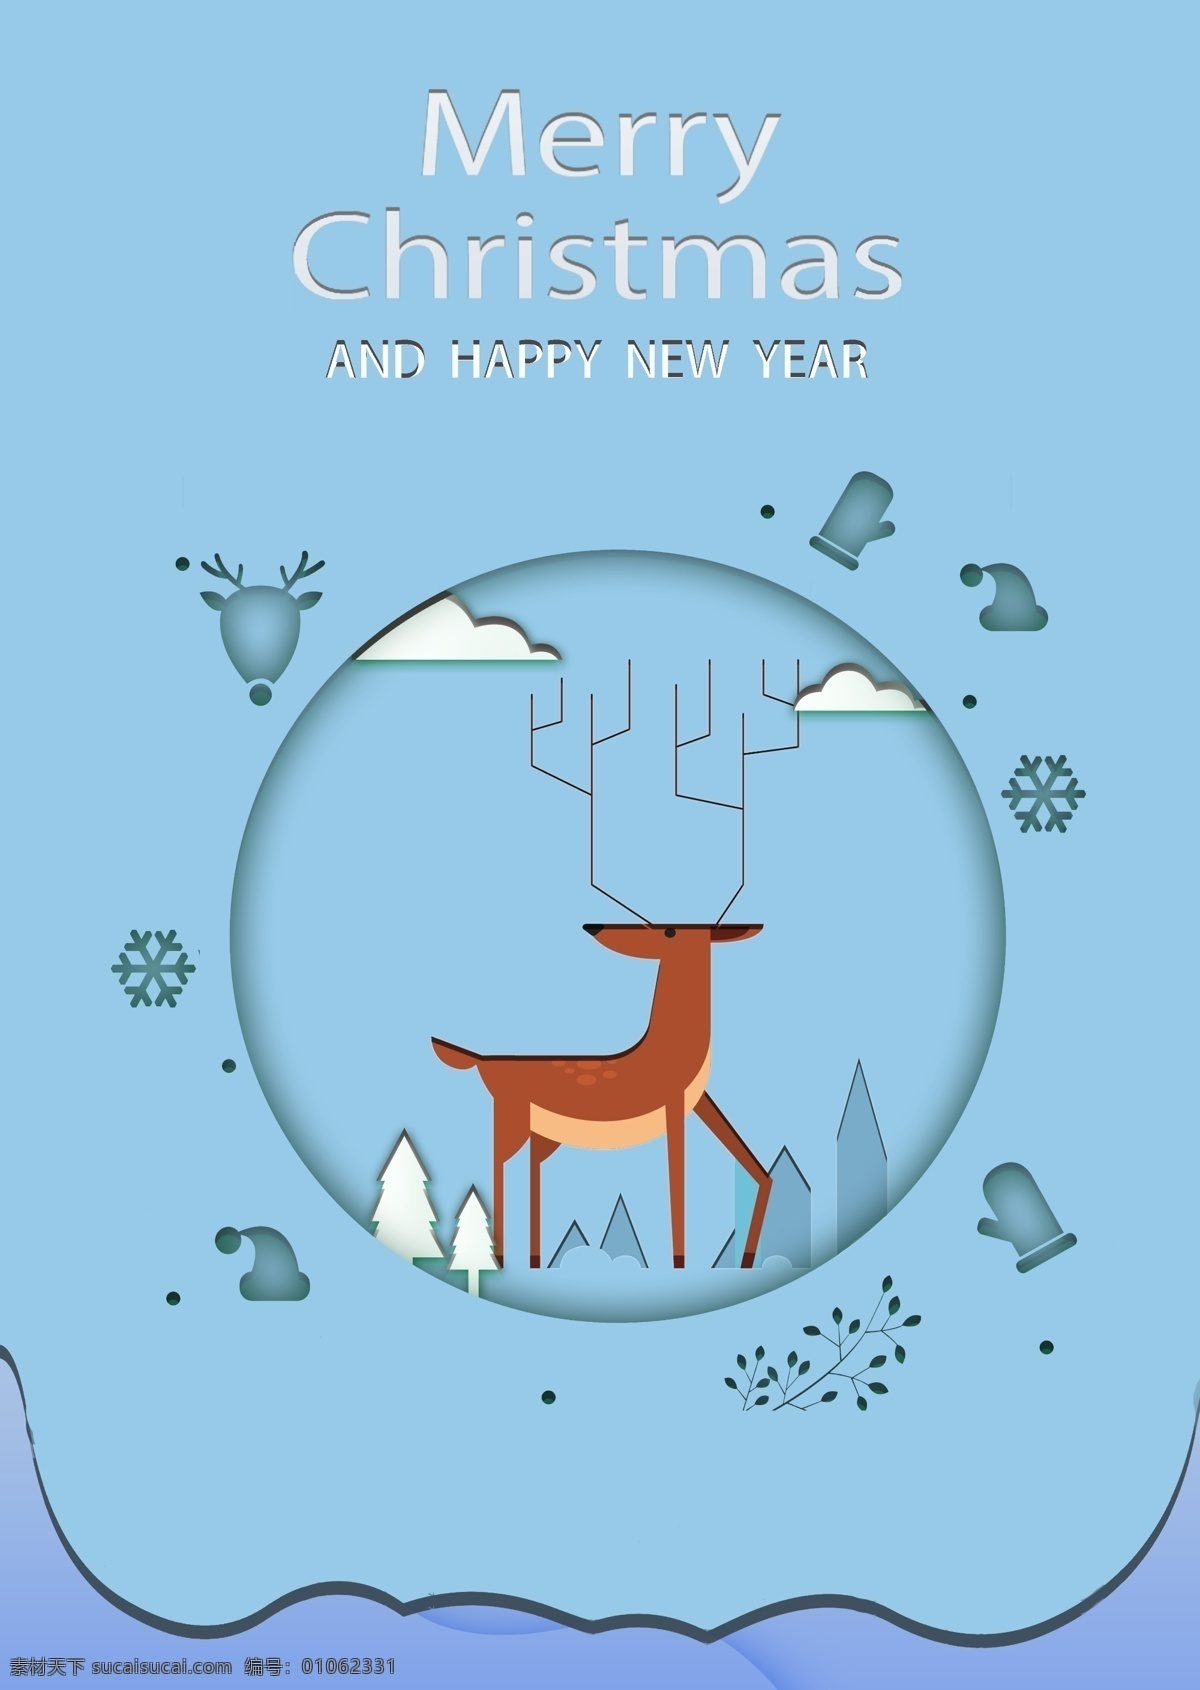 蓝色 名 鹿名 圣诞节 新年 简单 肝药 云 n 树 雪花儿 圆形 向量 英文 叶 手套 电池 圣诞帽子 海报 怀特饼干